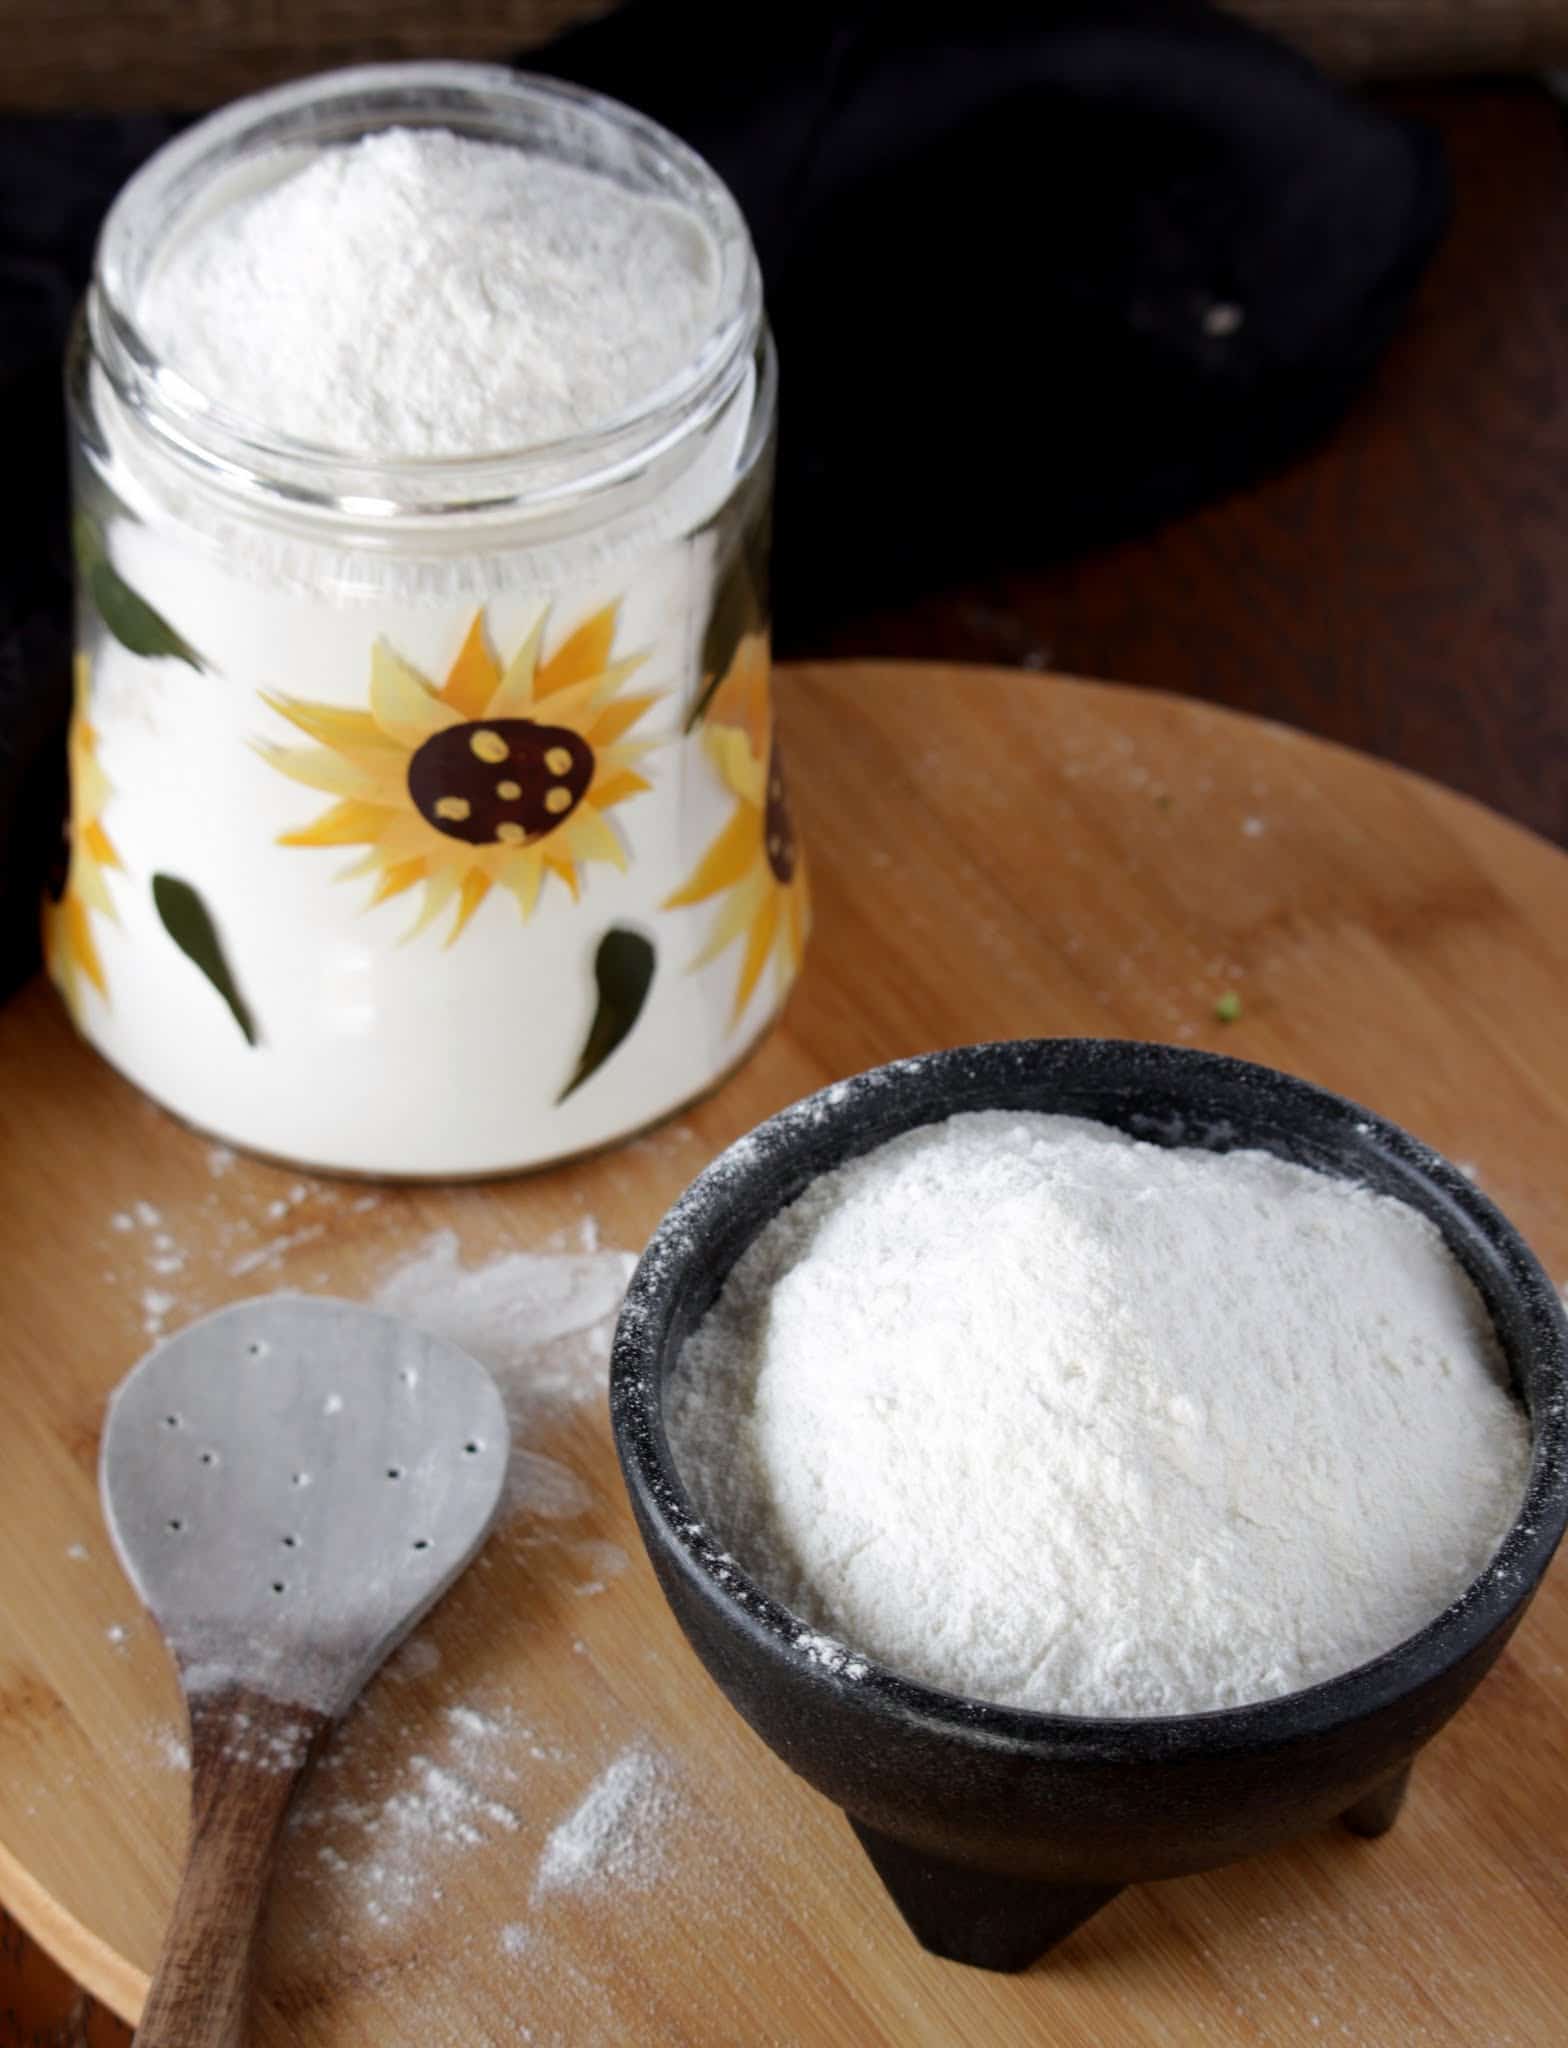 Home made Rice flour